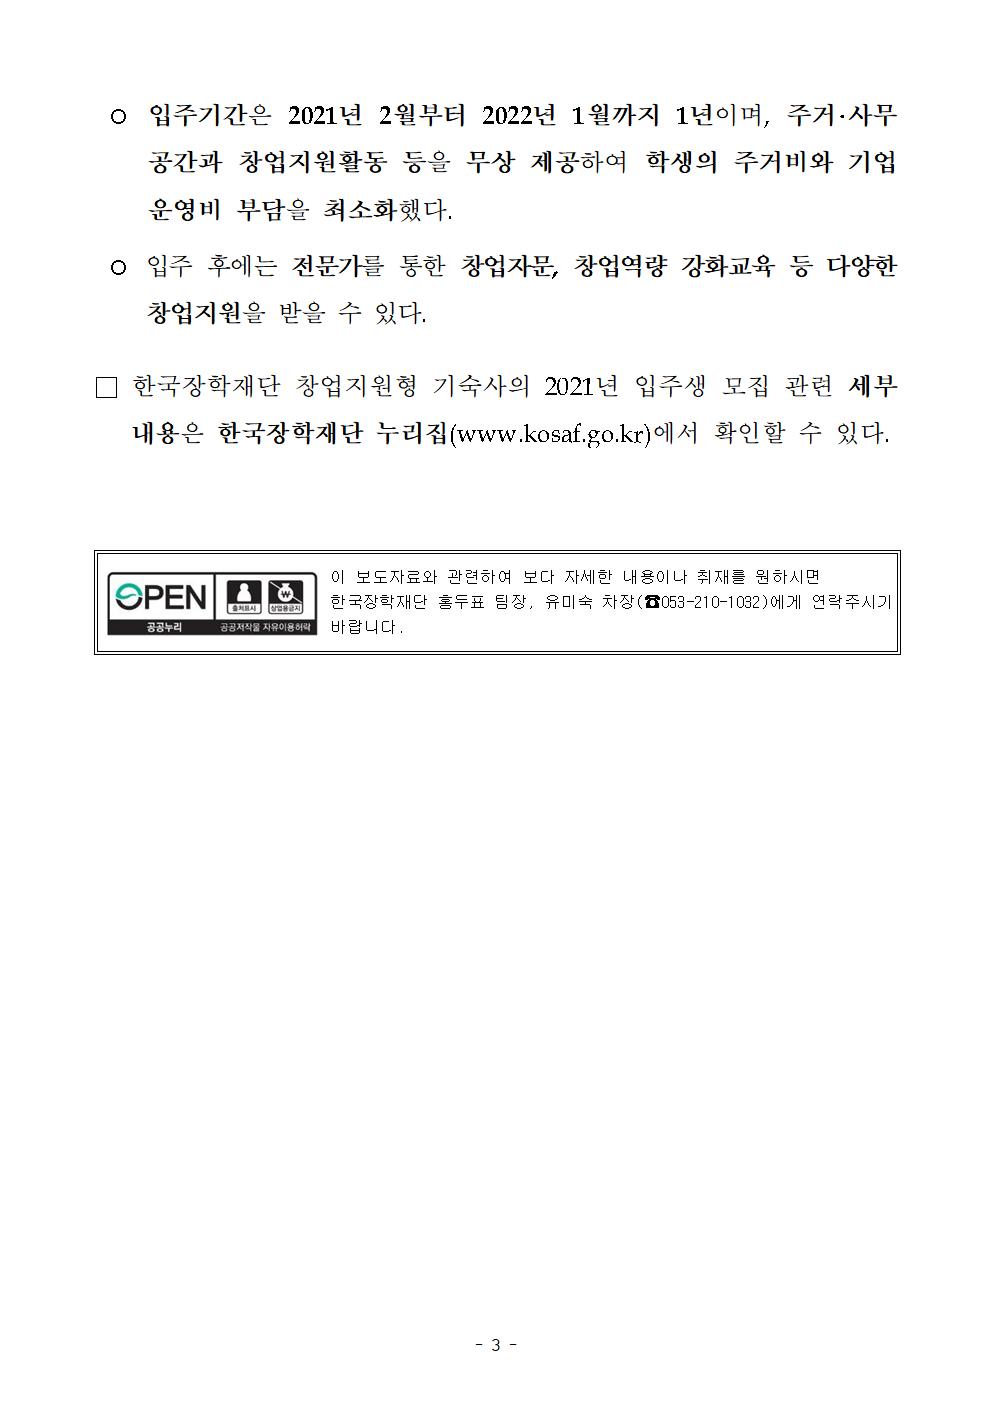 12-15(화)[보도자료] 한국장학재단 창업지원형 기숙사 2021학년도 입주생 모집003.jpg